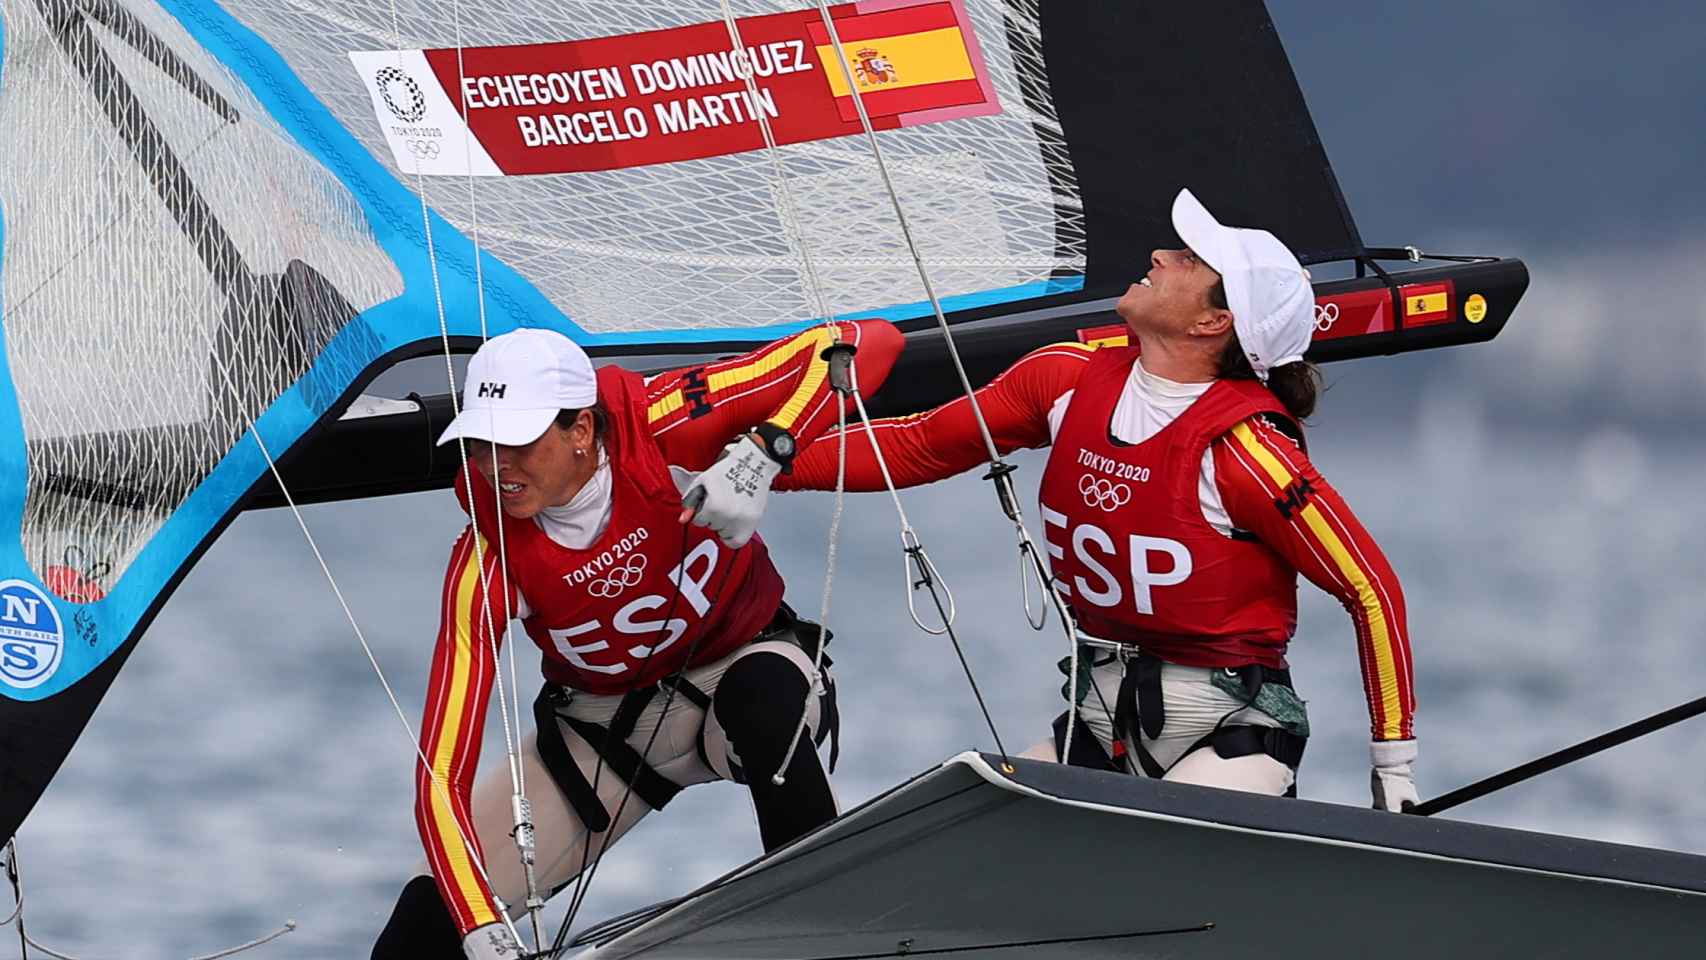 Tamara Echegoyen y Paula Barceló, en los Juegos Olímpicos